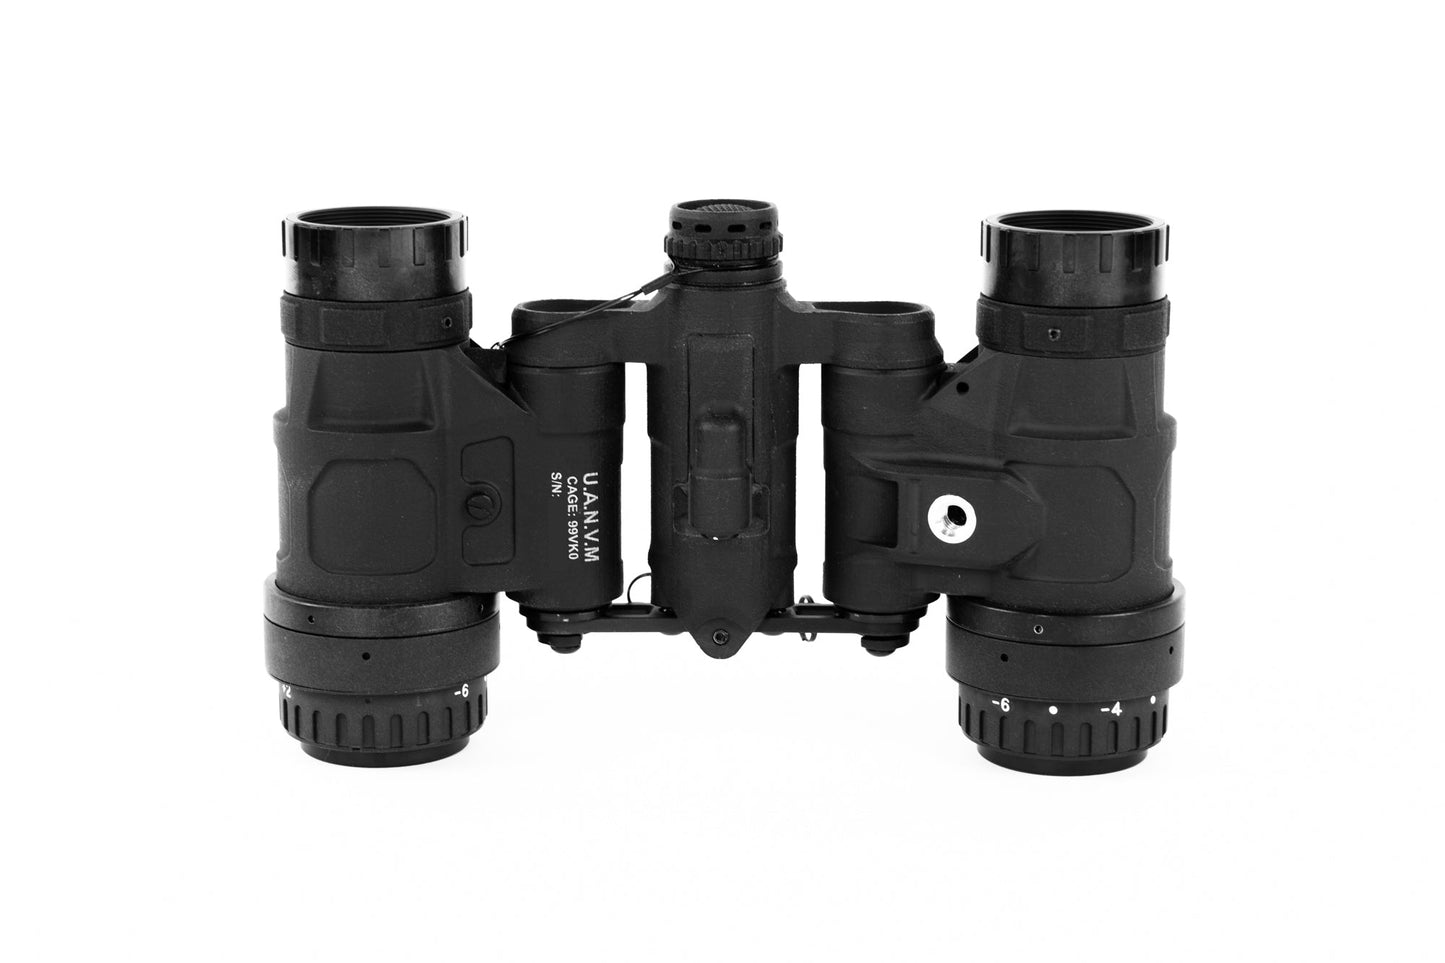 Nocturn Industries Daisho Complete Binocular NVG